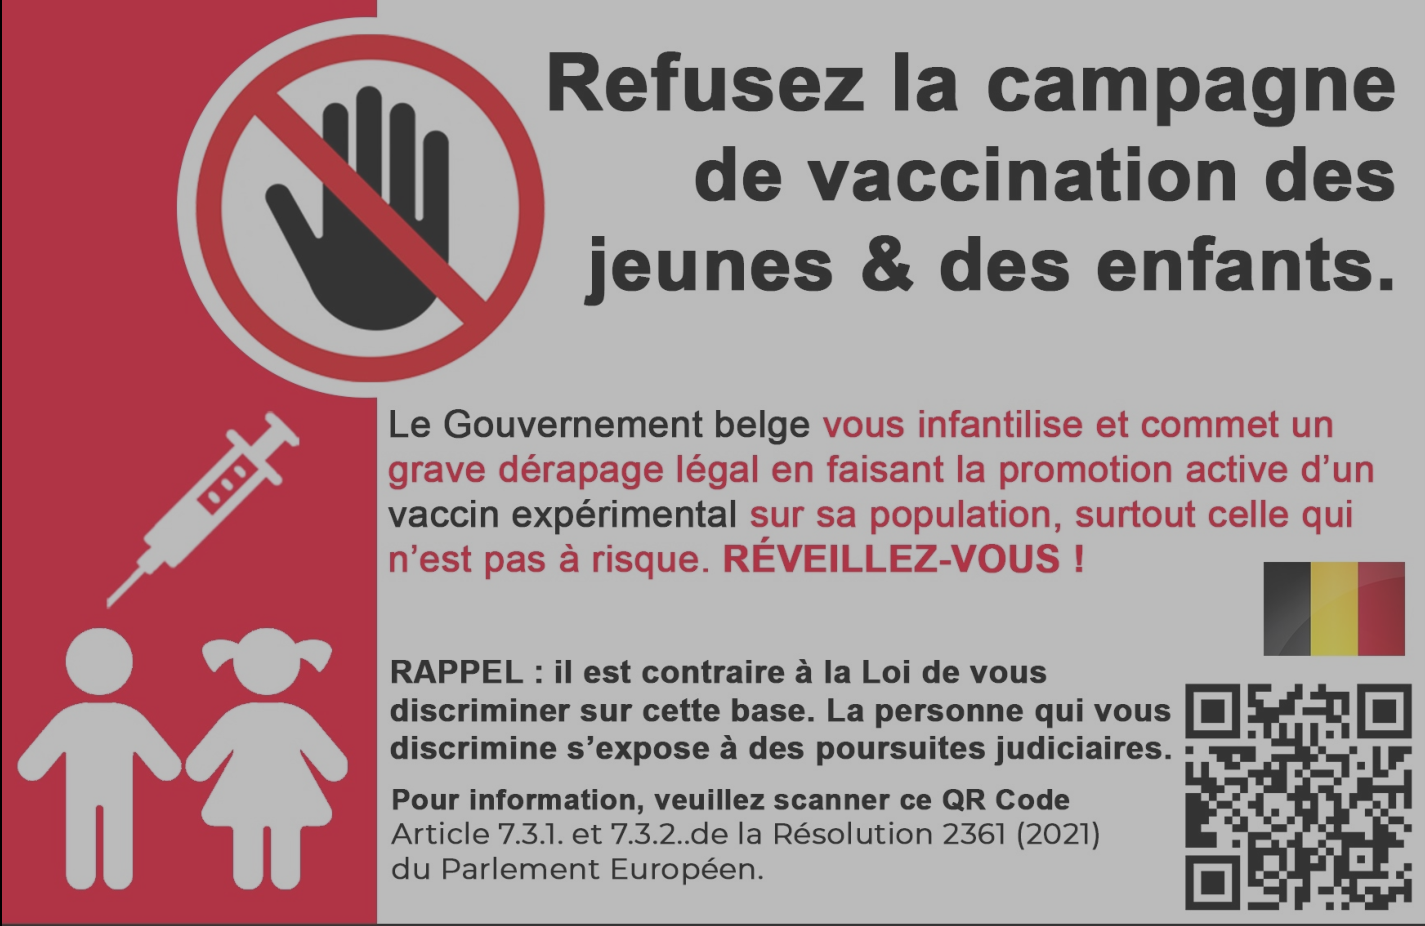 Refusez la campagne de vaccination des jeunes & enfants